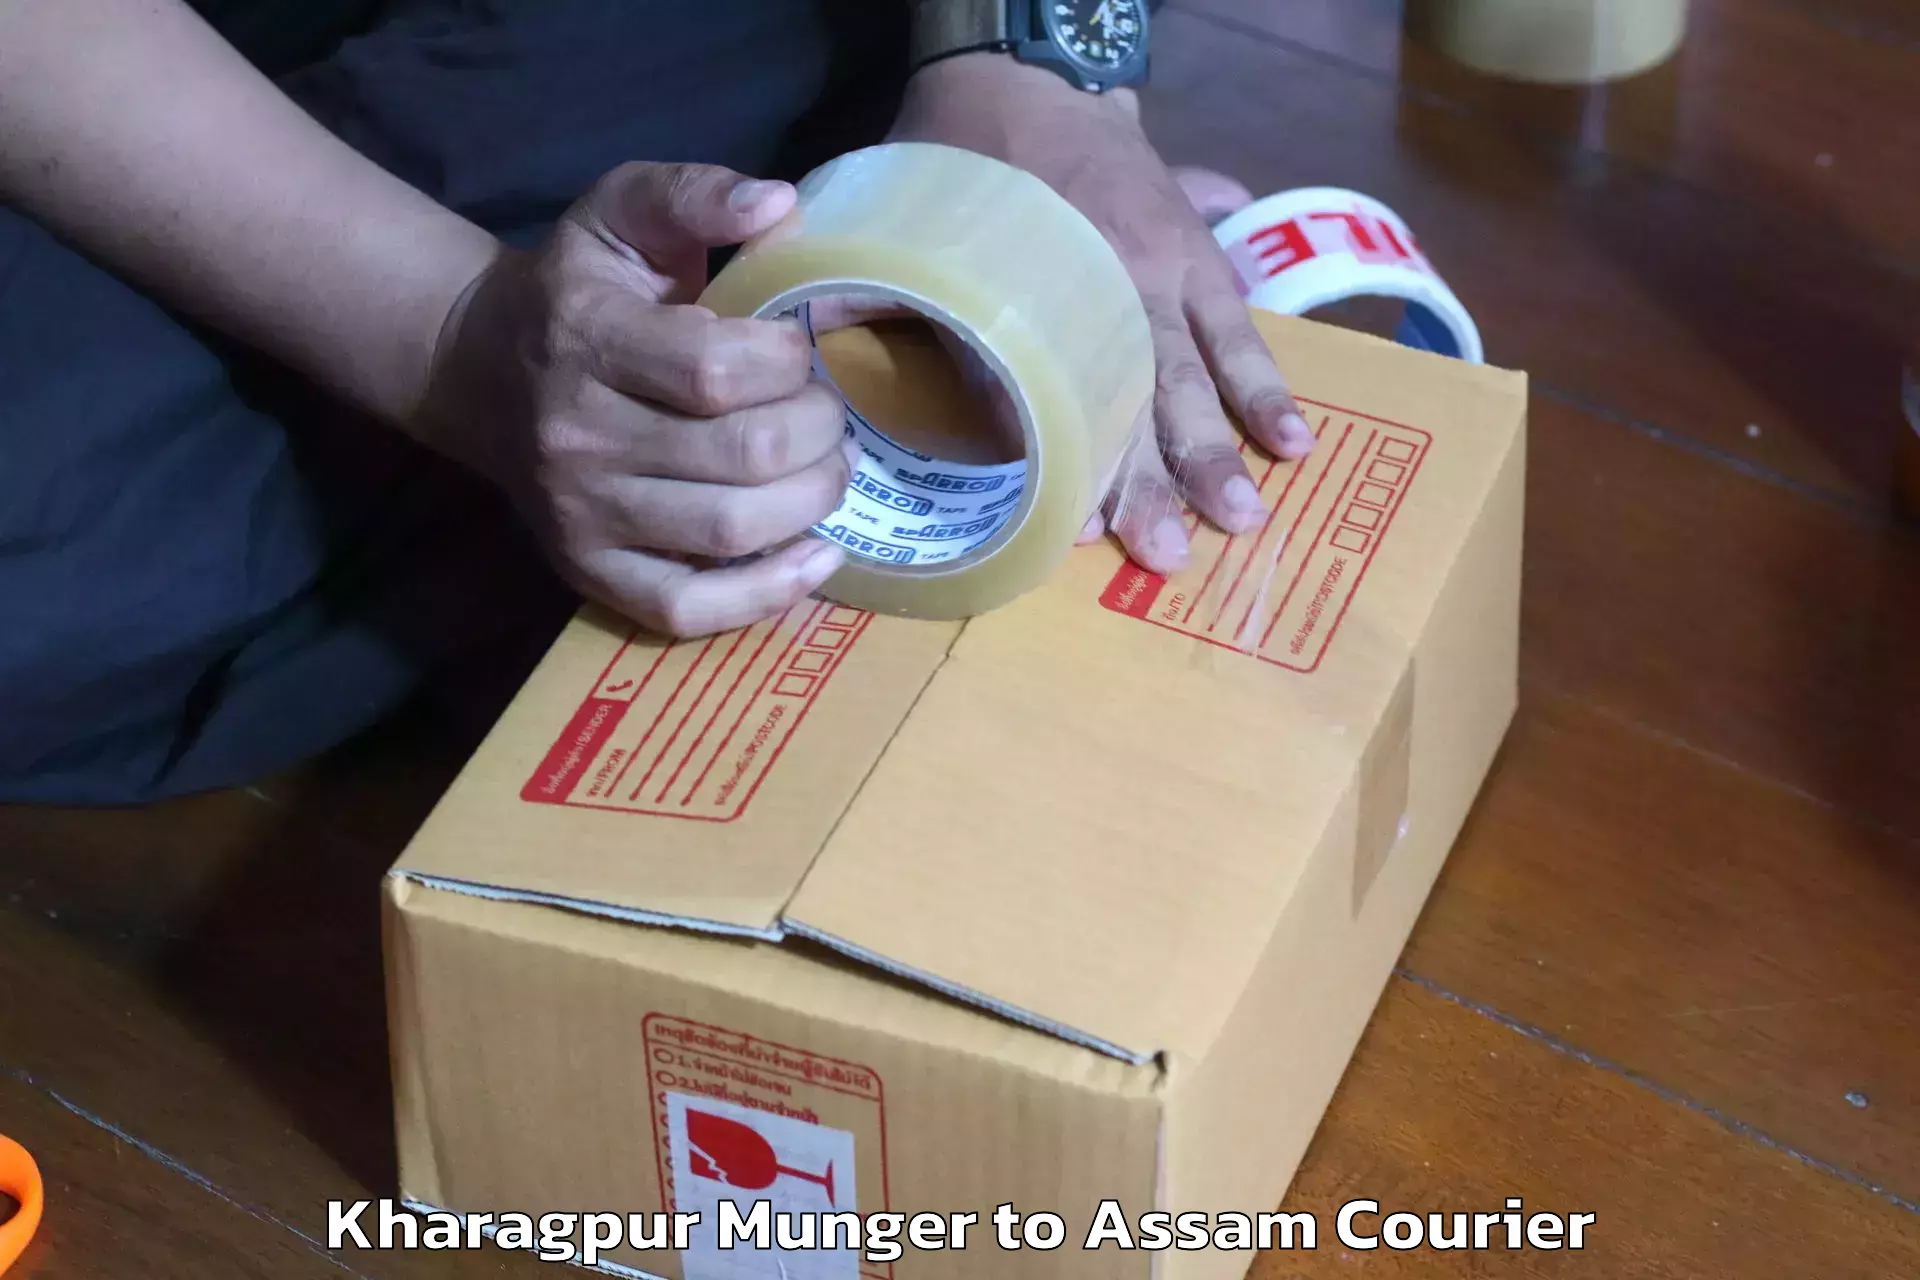 Furniture transport experts Kharagpur Munger to Amoni